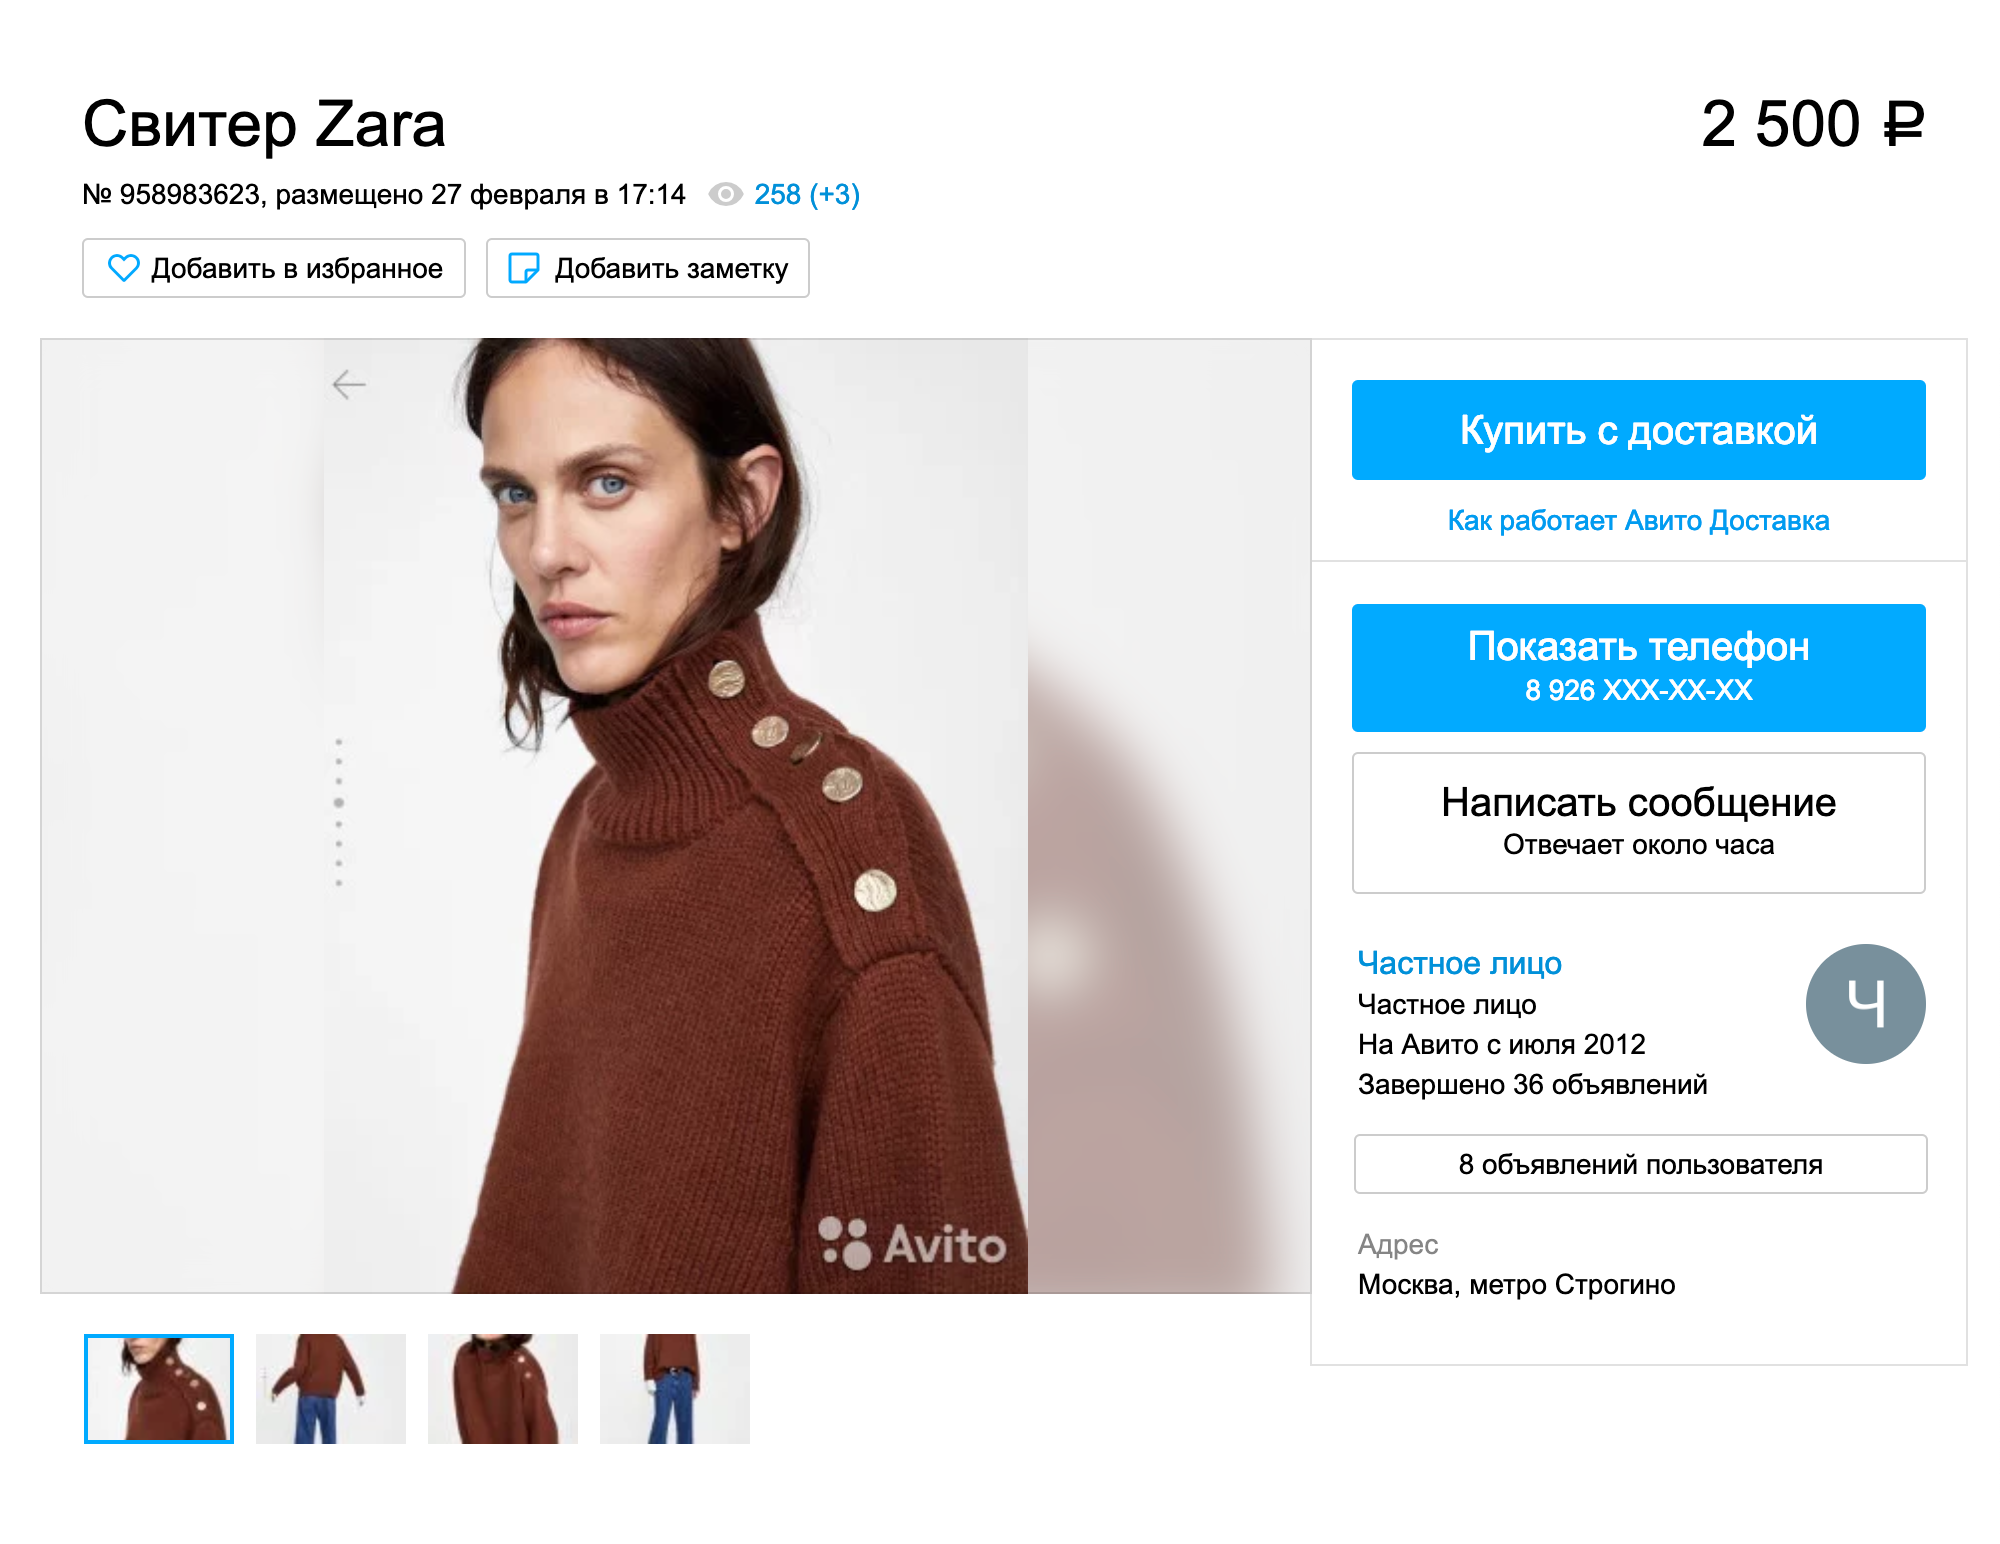 Новый свитер стоит примерно столько же, а реальных фотографий свитера нет — купить в магазине кажется безопаснее